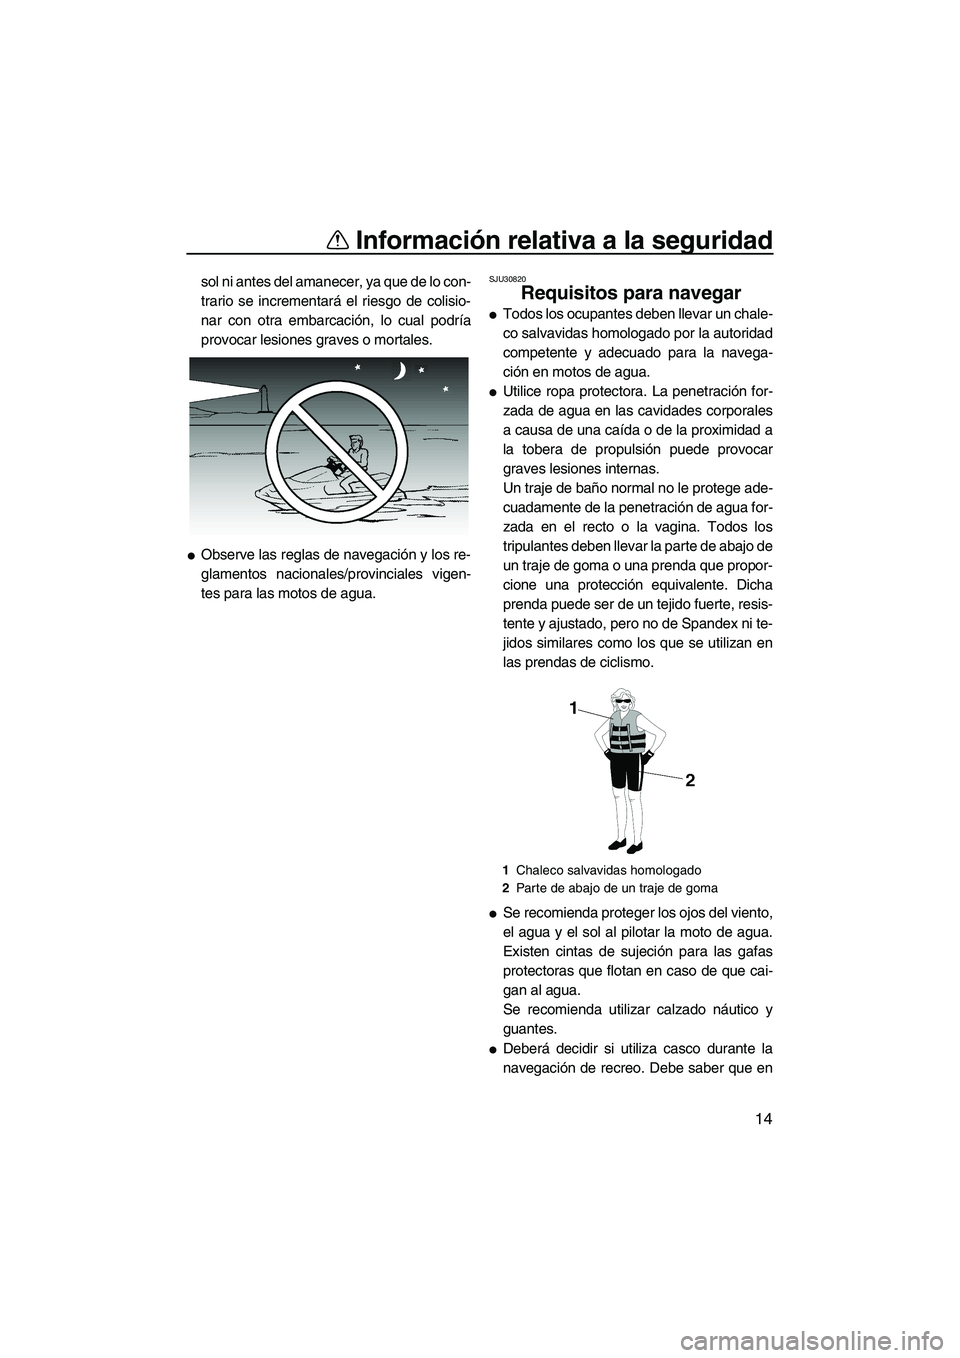 YAMAHA VX DELUXE 2007  Manuale de Empleo (in Spanish) Información relativa a la seguridad
14
sol ni antes del amanecer, ya que de lo con-
trario se incrementará el riesgo de colisio-
nar con otra embarcación, lo cual podría
provocar lesiones graves o